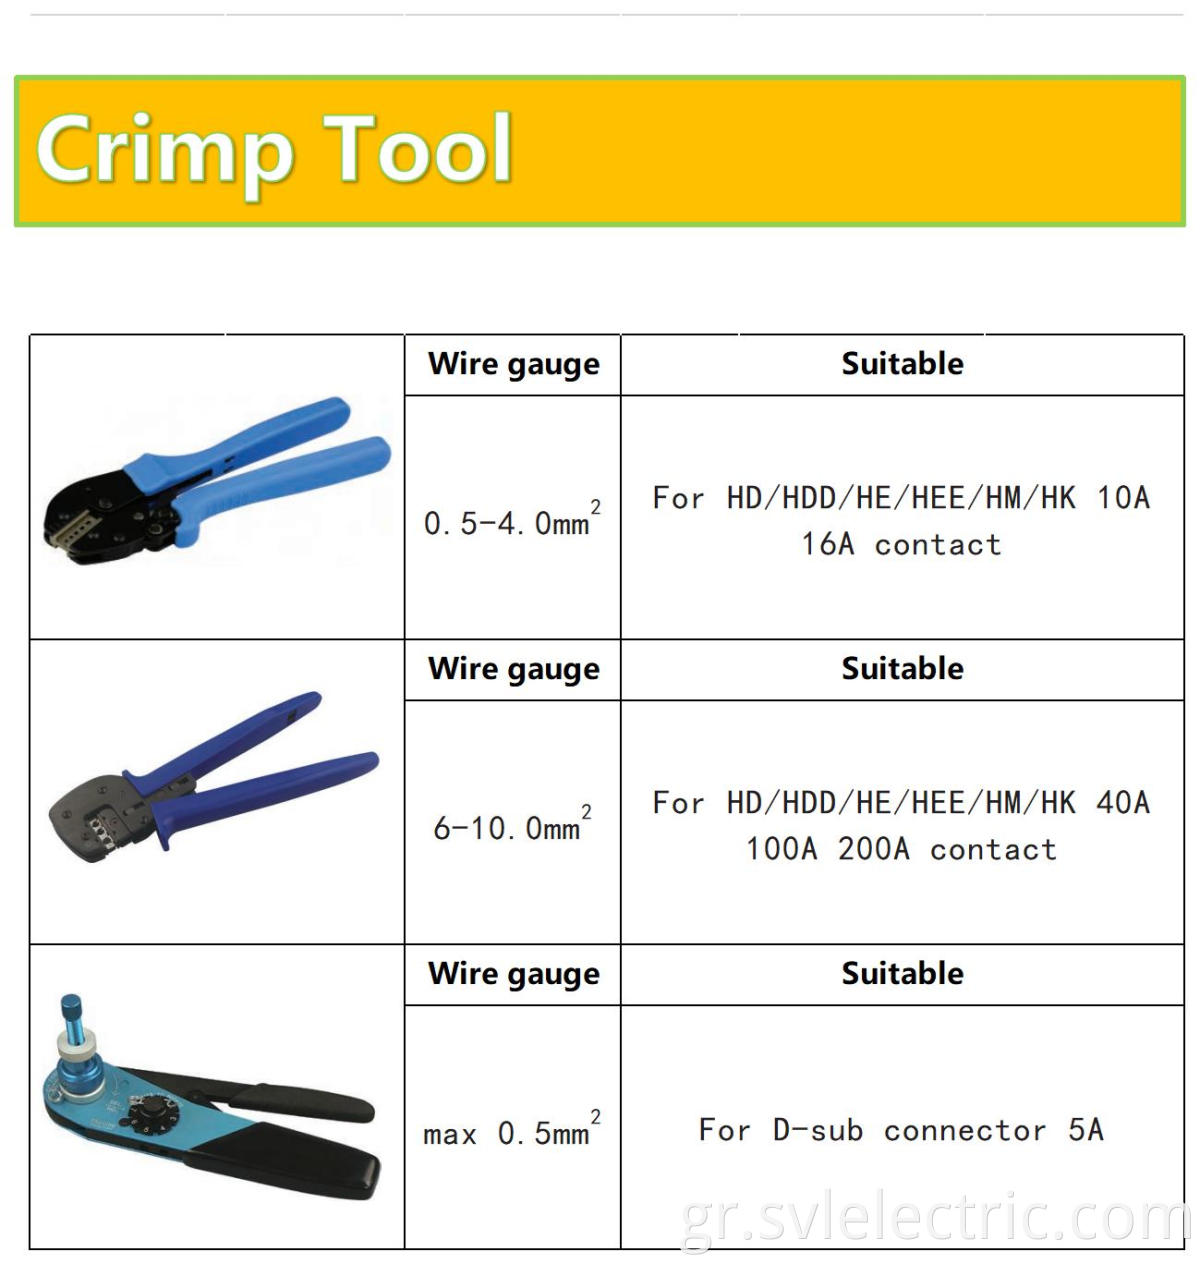 crimp tool